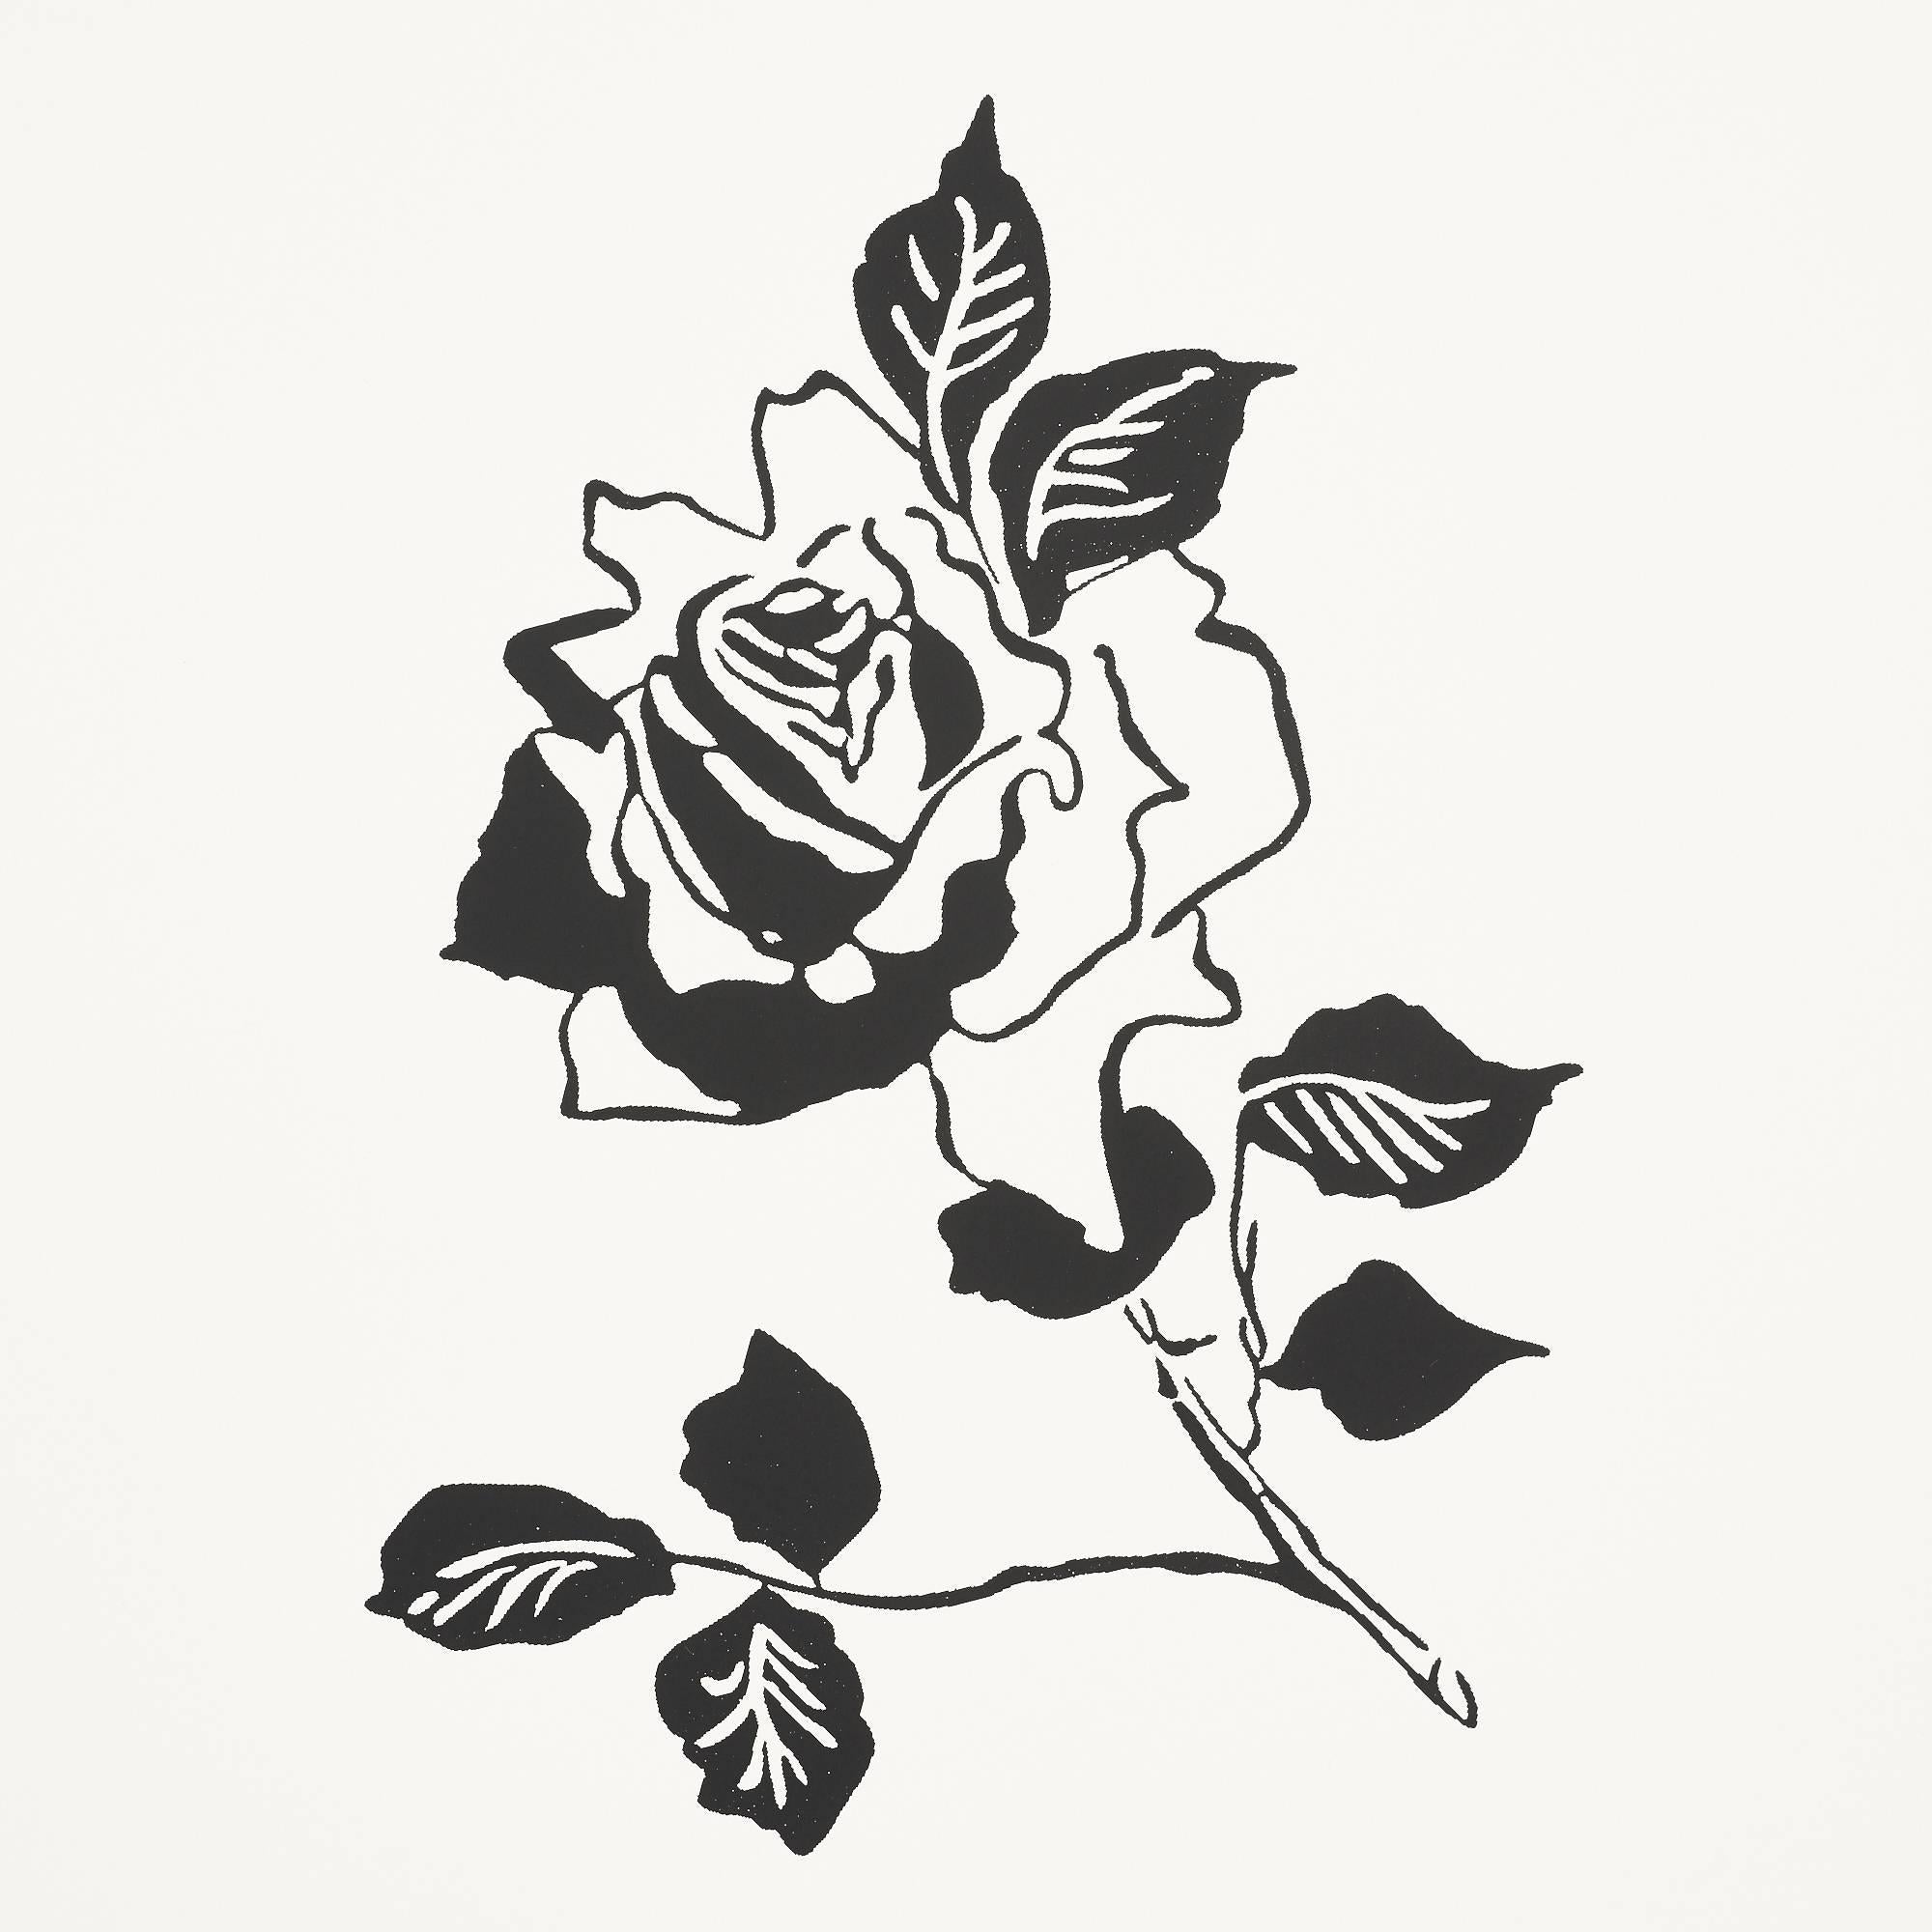 Adele ist eine jugendliche Interpretation der traditionellen Rose. Inspiriert von einer Illustration aus den 1930er Jahren aus dem Vogue-Archiv, fängt diese Siebdrucktapete die lockere, gestische Handschrift des Originals ein.

Vogue Living ist eine